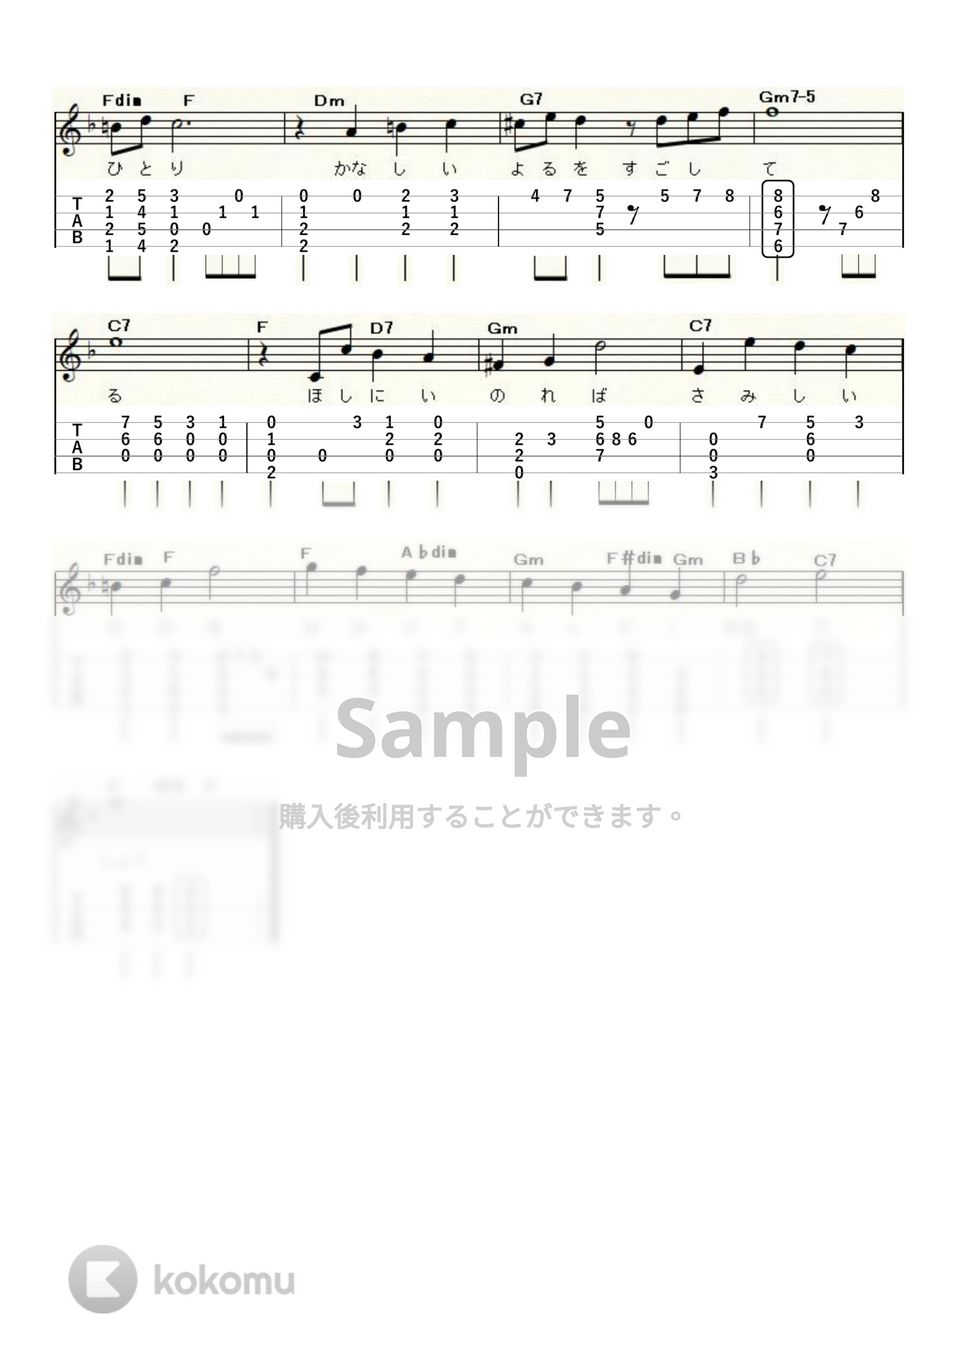 ディズニー - 星に願いを (ｳｸﾚﾚｿﾛ / High-G,Low-G / 初～中級) by ukulelepapa